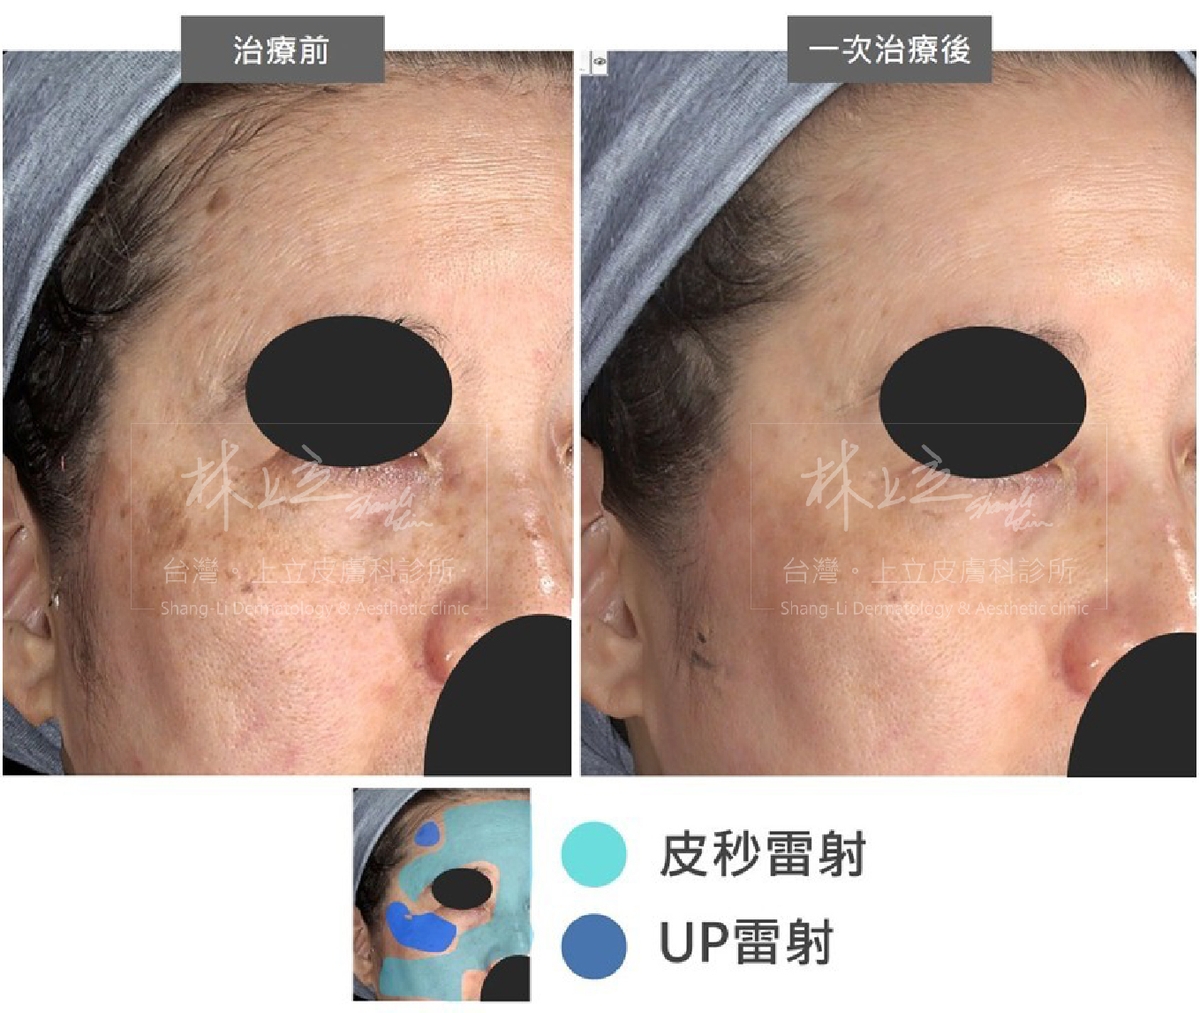 根據臉部的暗沈、斑點、細紋和老人斑劃分出不同區塊，再利用PicoSure755蜂巢皮秒雷射和UP雷射分別進行處理